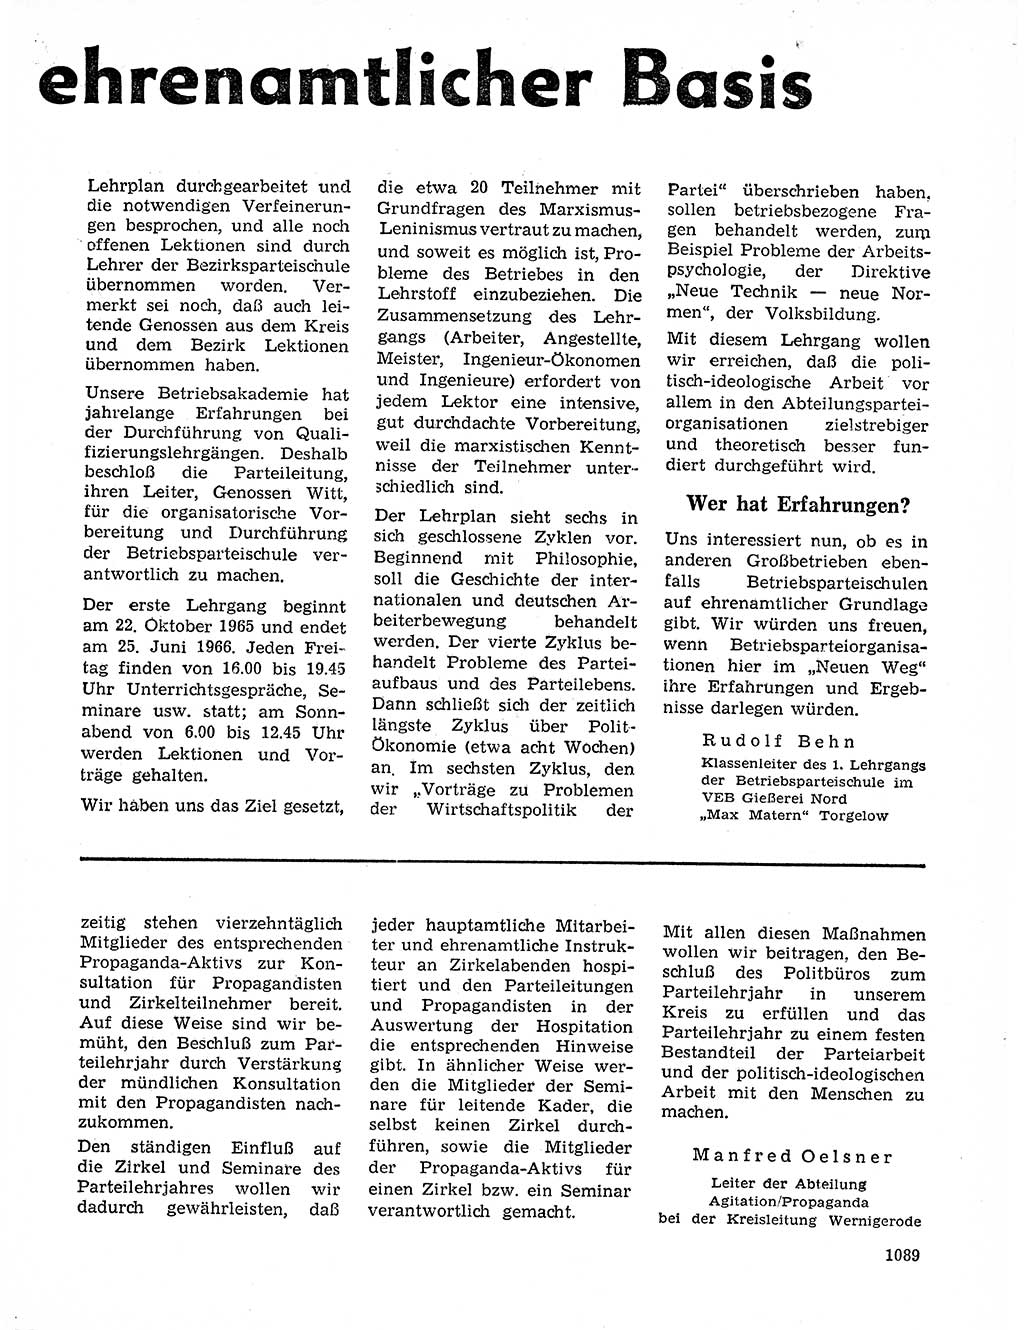 Neuer Weg (NW), Organ des Zentralkomitees (ZK) der SED (Sozialistische Einheitspartei Deutschlands) für Fragen des Parteilebens, 20. Jahrgang [Deutsche Demokratische Republik (DDR)] 1965, Seite 1073 (NW ZK SED DDR 1965, S. 1073)